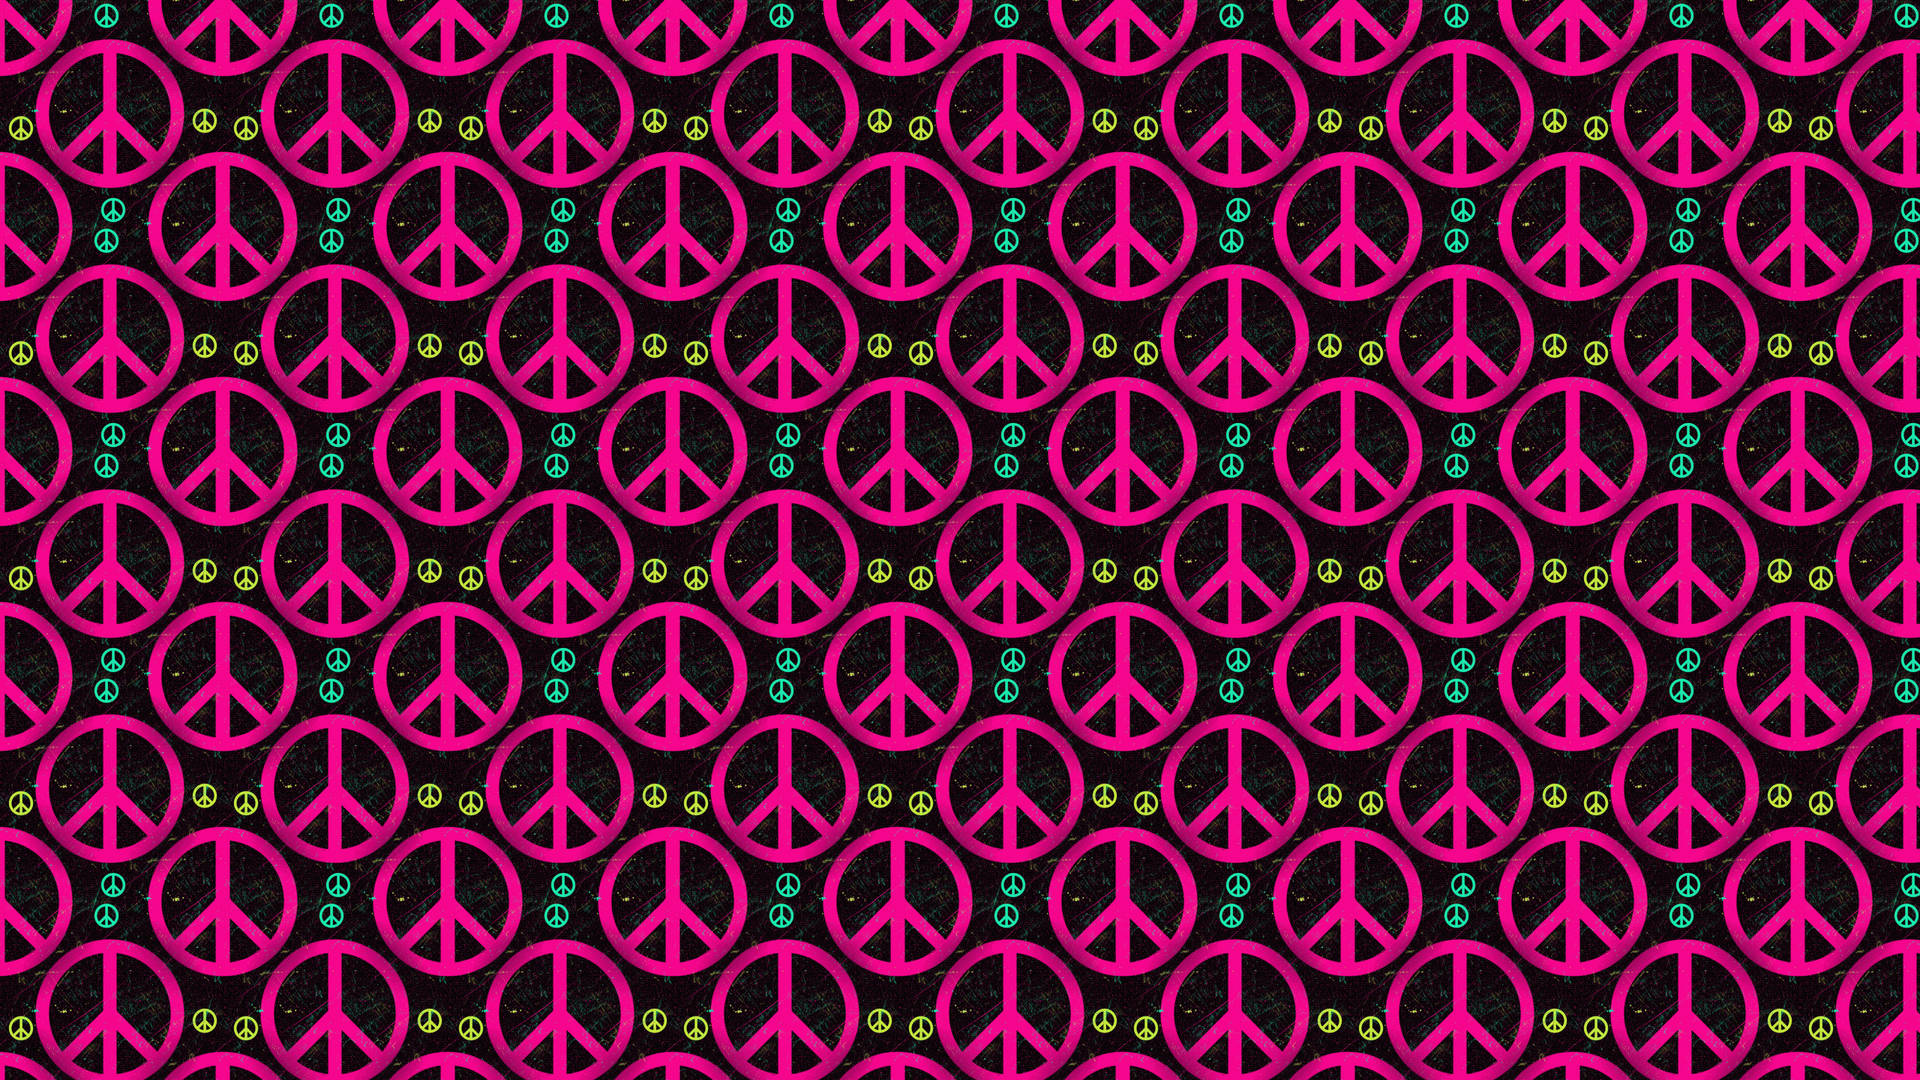 Fuchsia Pink Peace Symbols Picture